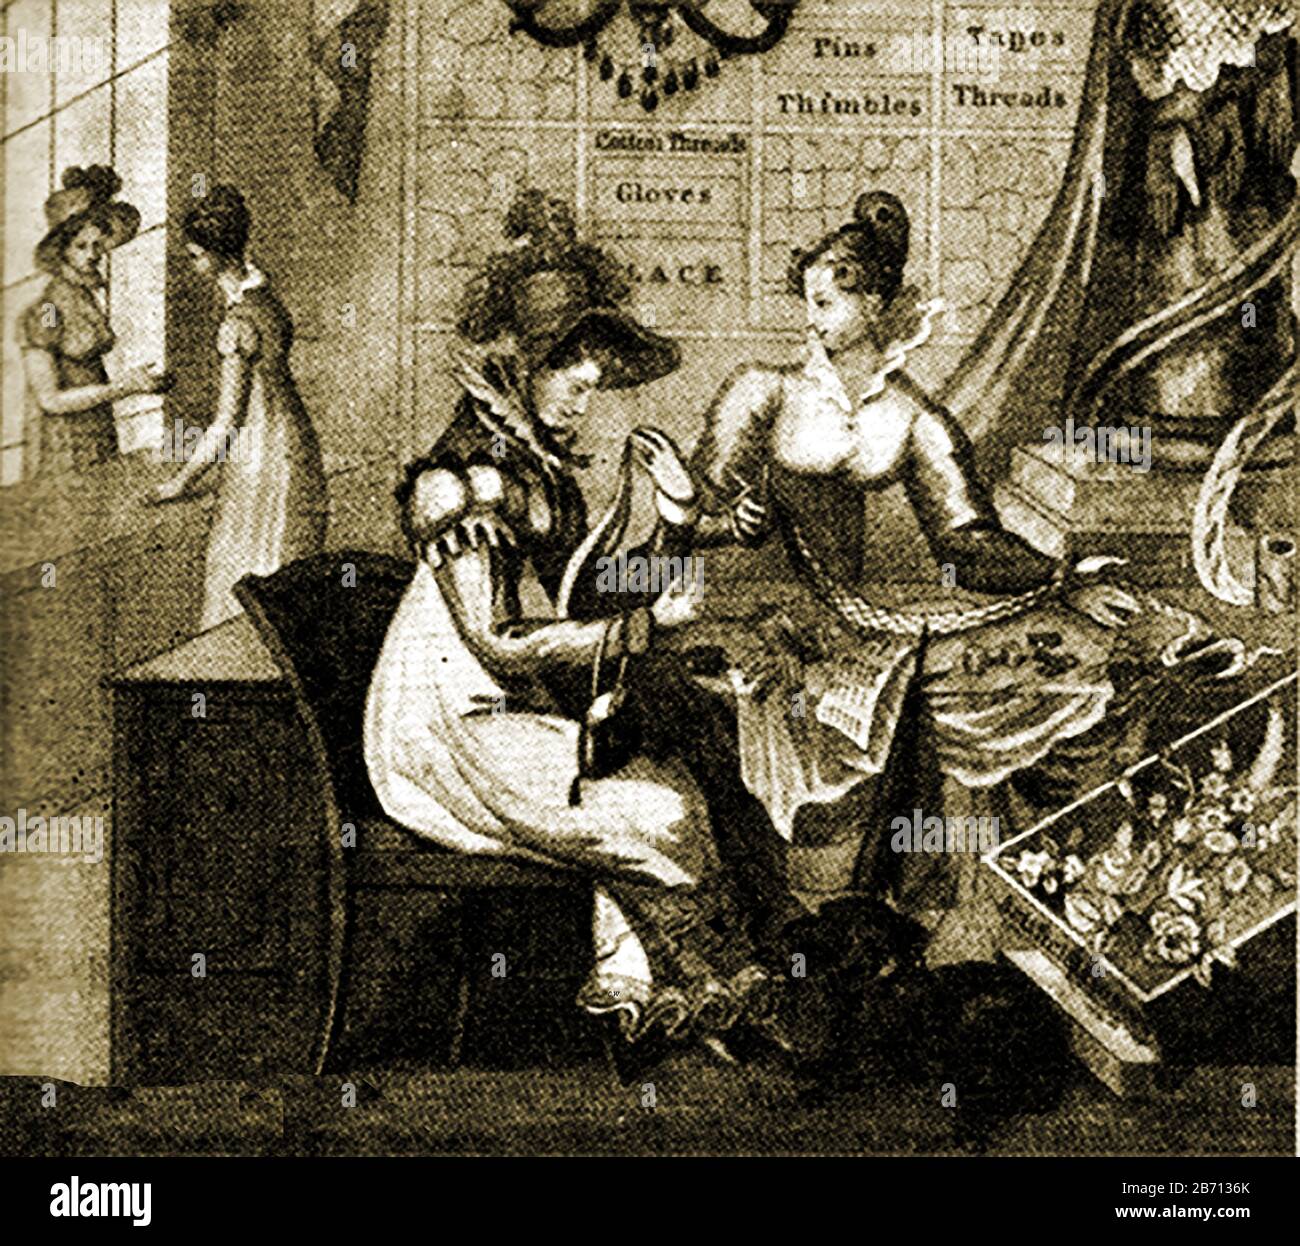 Negozio di haberdasher del XIX secolo in Inghilterra (dove il termine  significa un negozio che vende articoli da cucire e talvolta rotoli di  stoffa o di altri materiali, in contrasto con gli